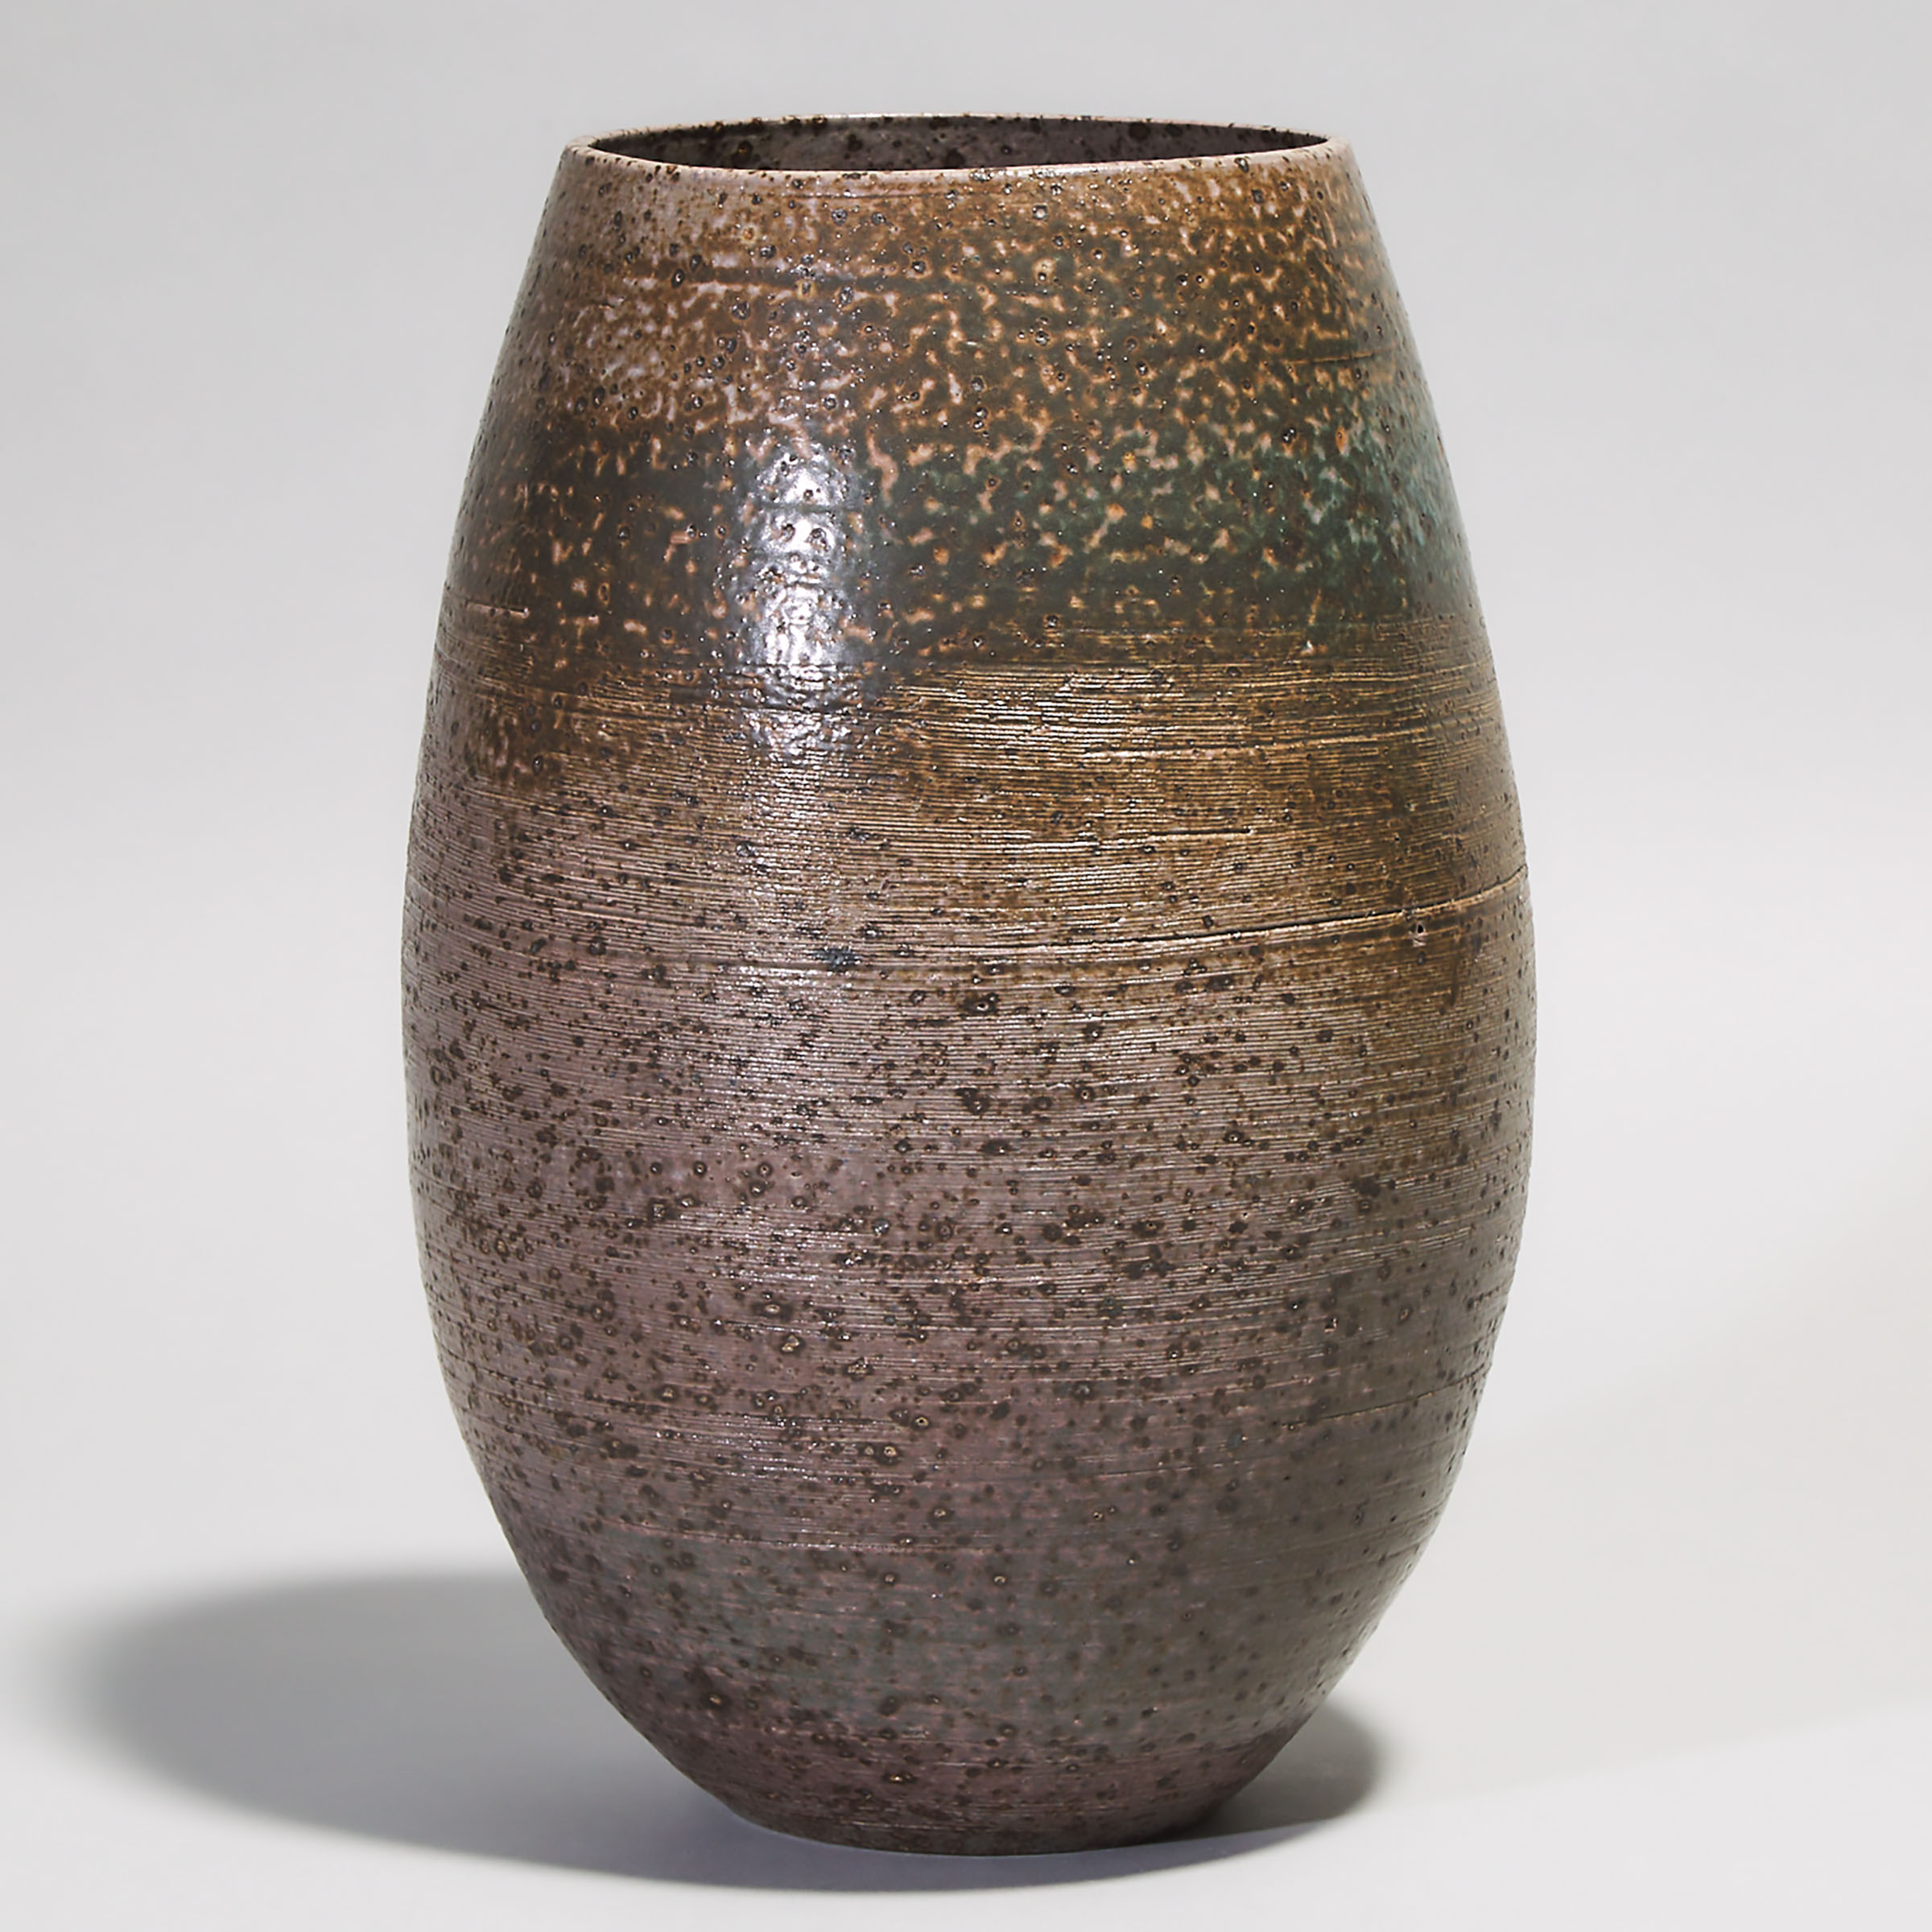 Kjeld & Erica Deichmann (Canadian, 1900–1963 and 1913–2007), Vase, mid-20th century